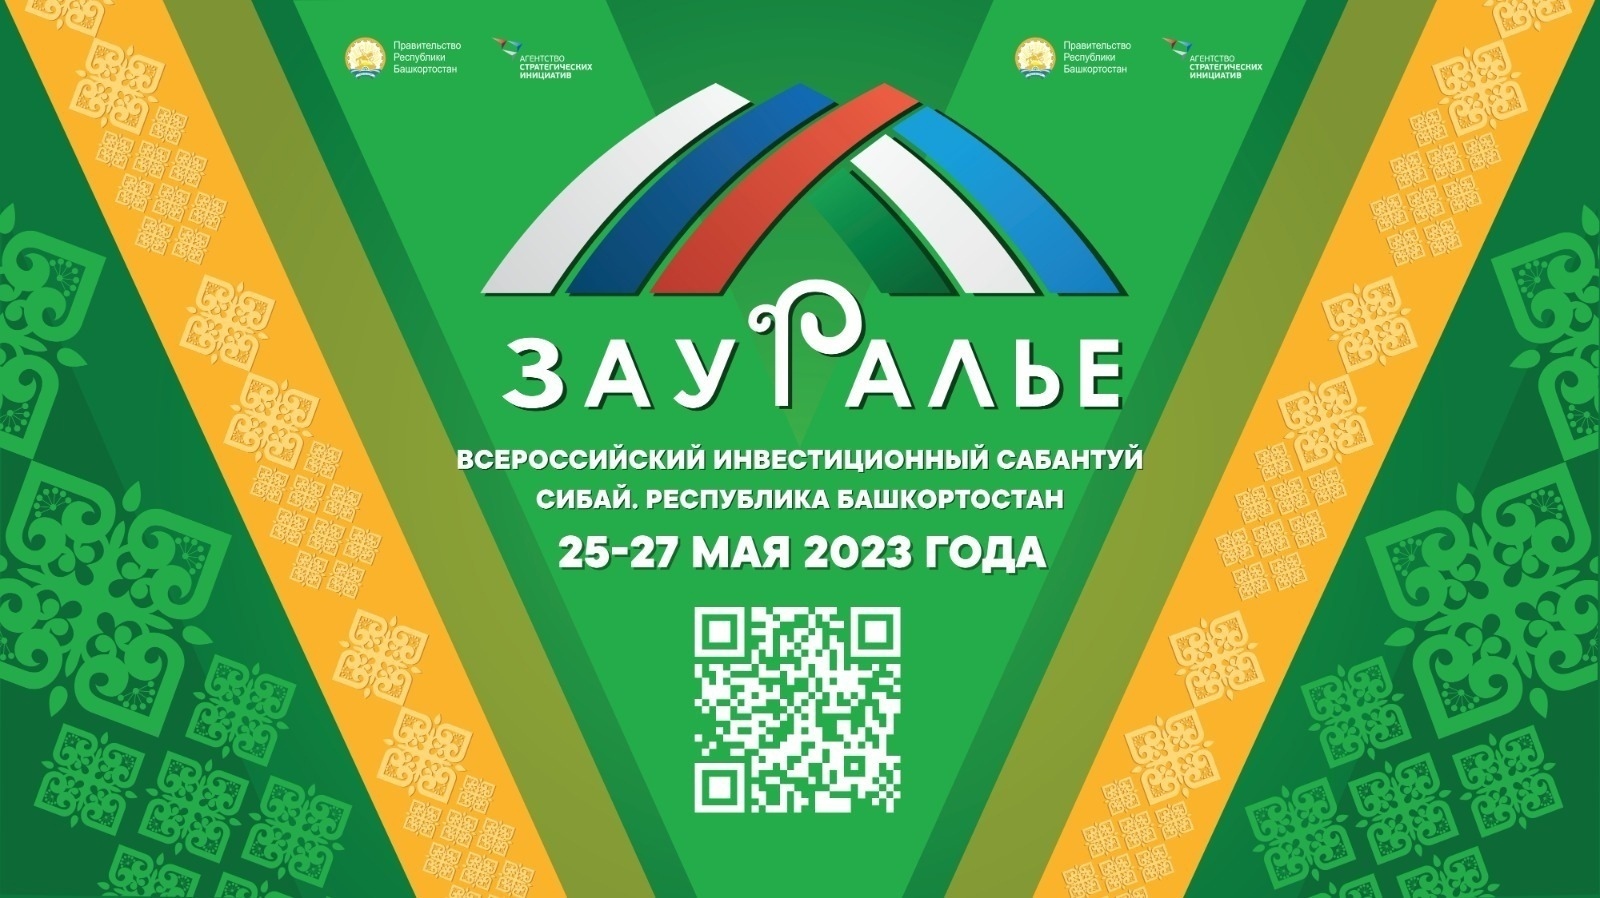 В рамках V Всероссийского инвестиционного сабантуя «Зауралье-2023» обсудили развитие государственно-частного партнерства в Башкортостане